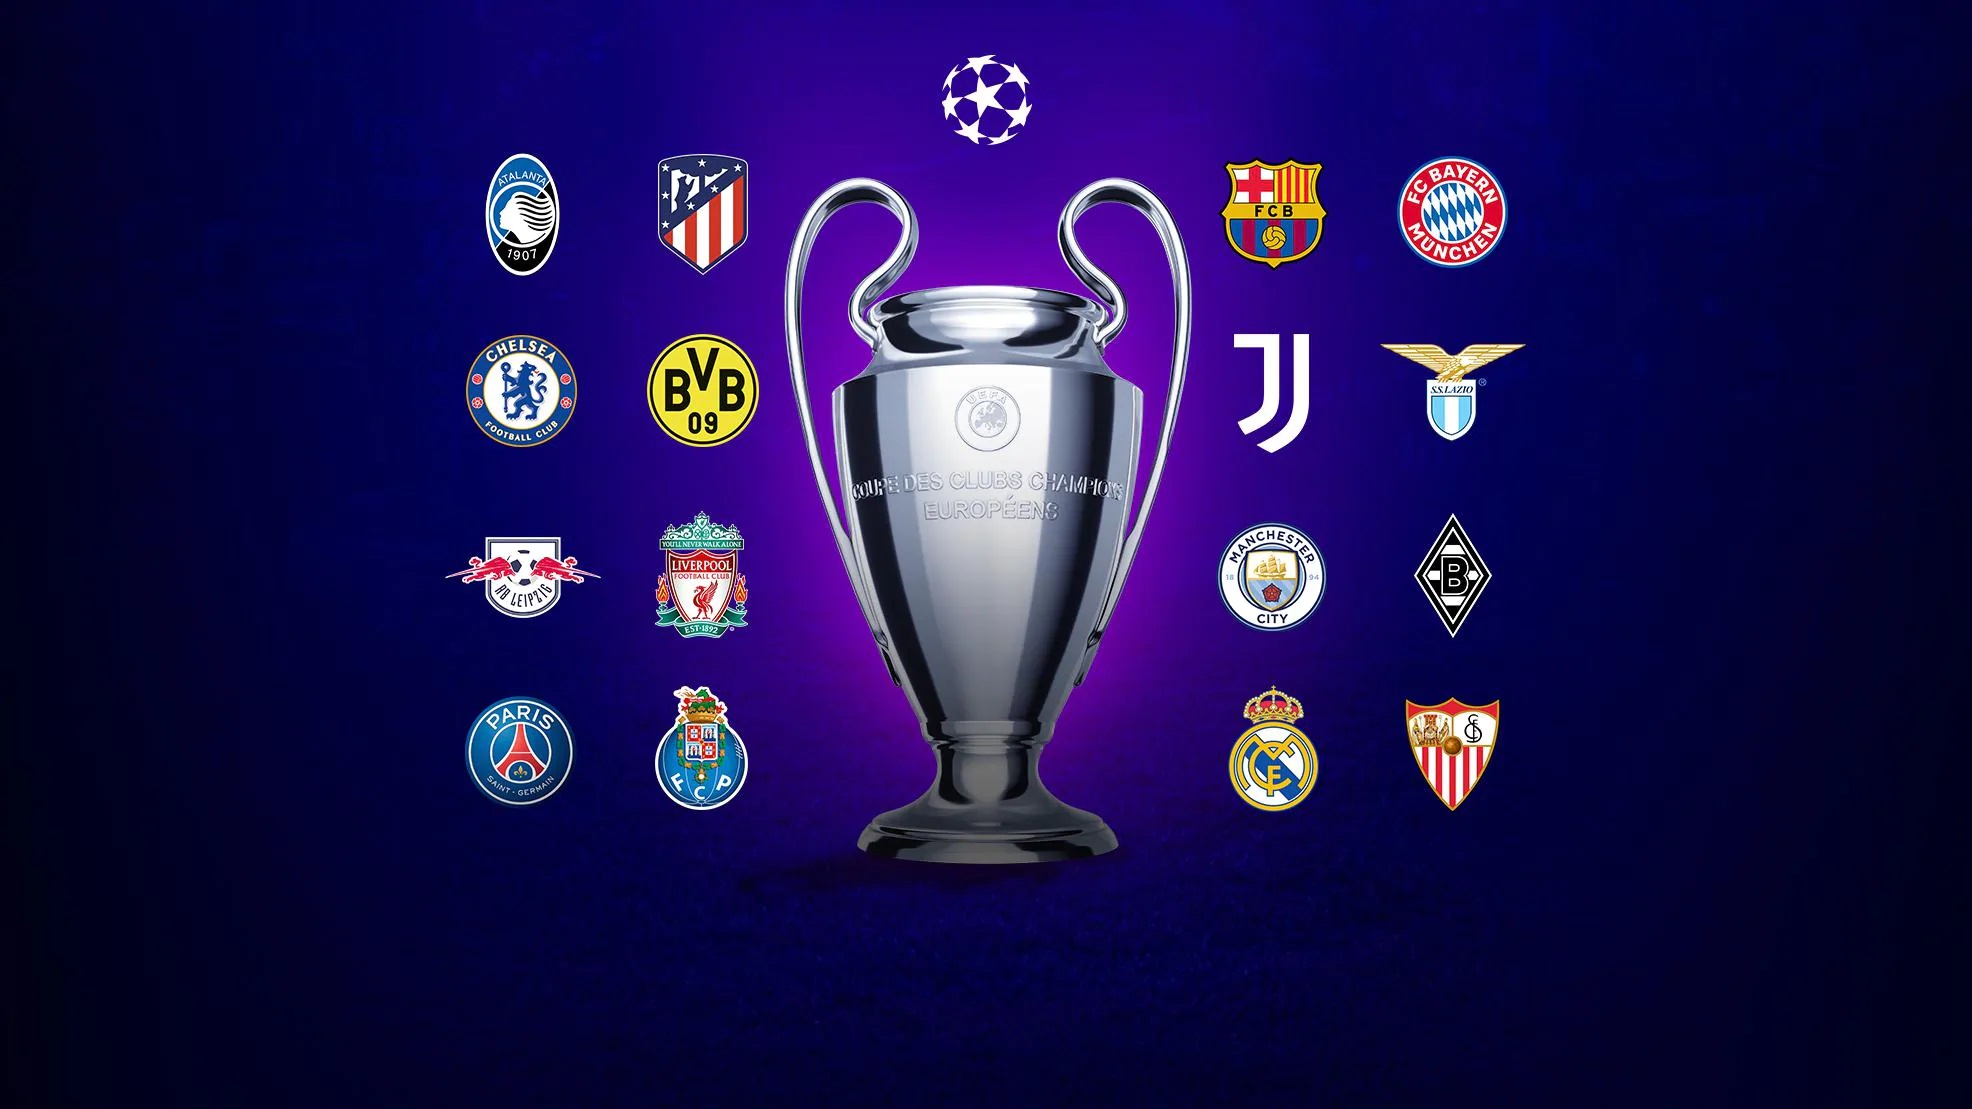 6 Equipementiers Se Partagent Les 16 Equipes Qualifiees Pour Les 1 8e De Finale De L Uefa Champions League 2021 Sportbuzzbusiness Fr